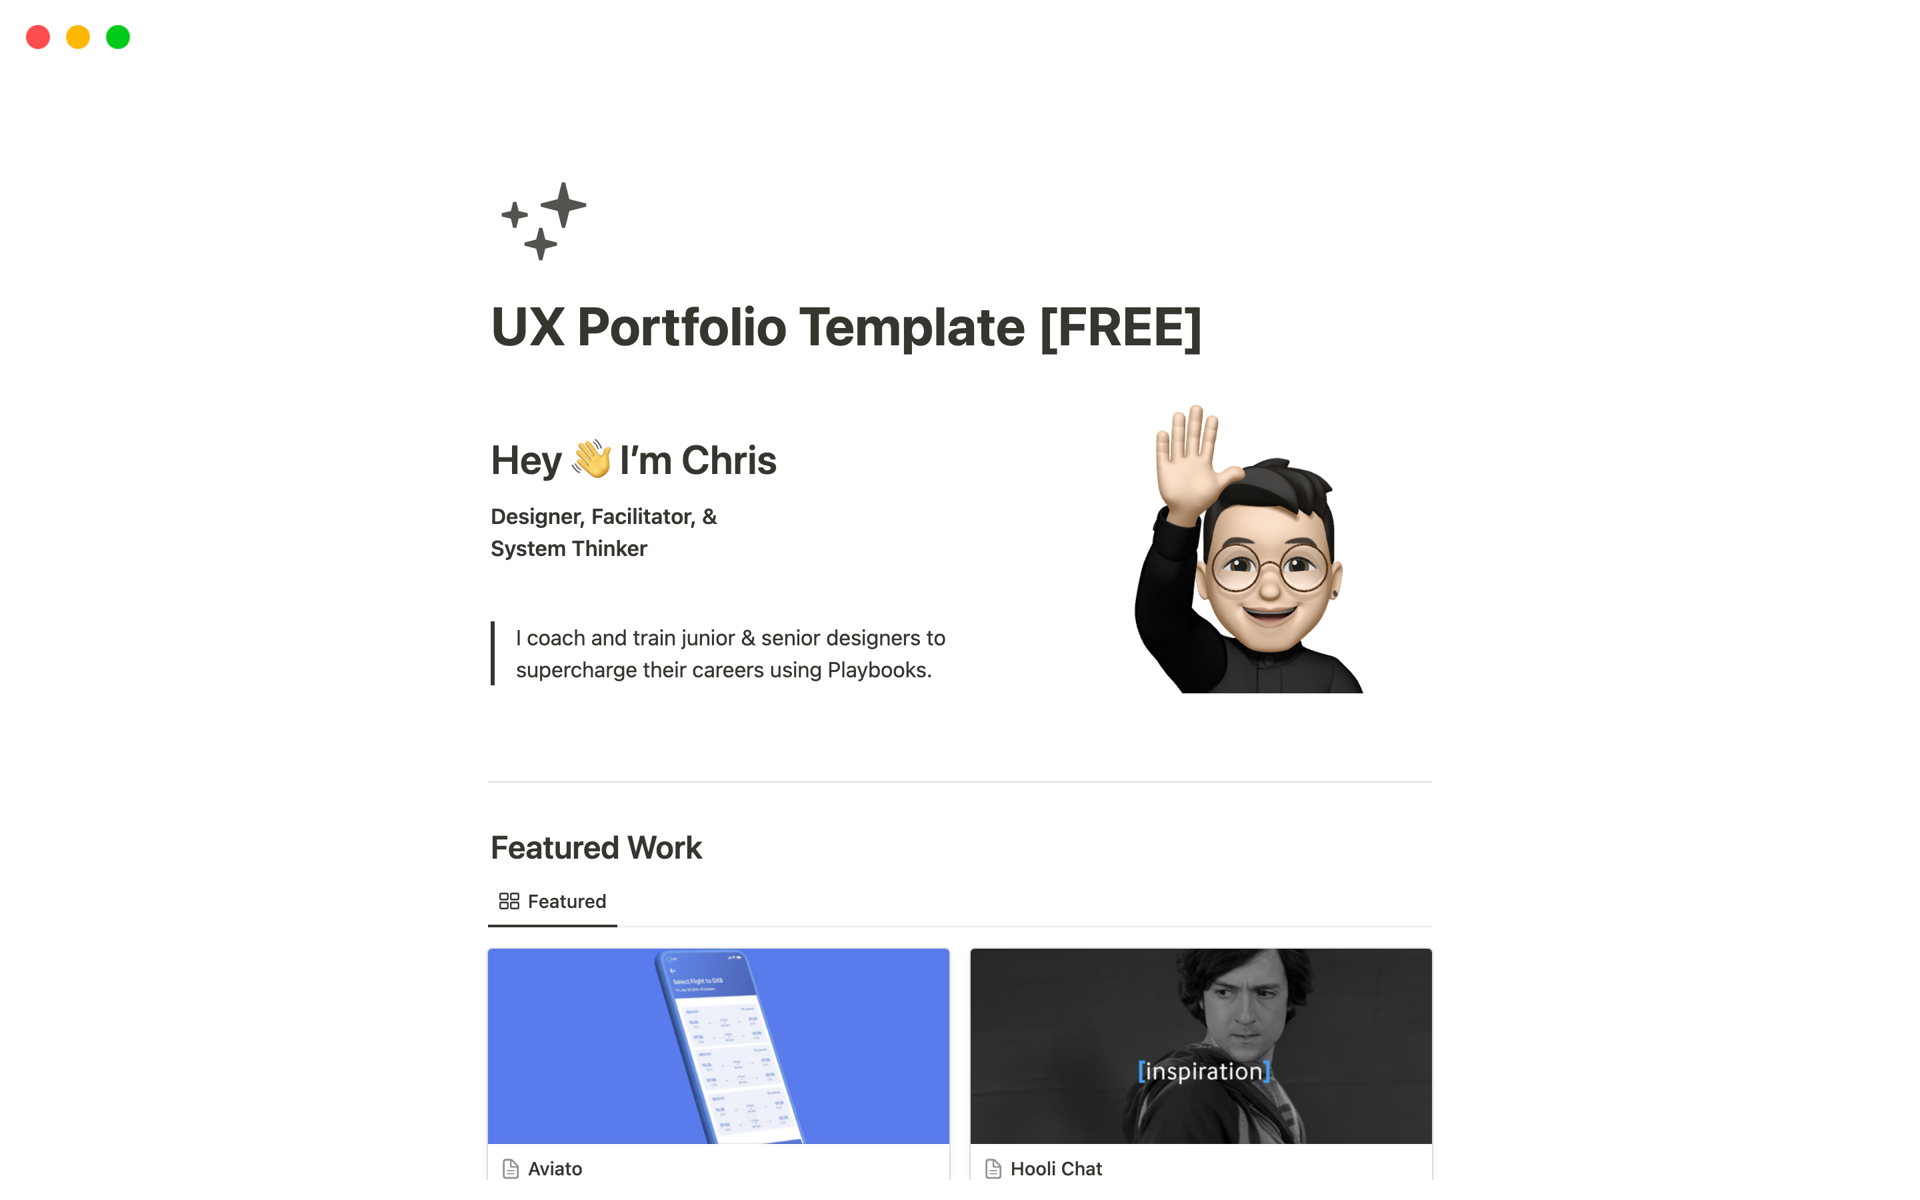 Aperçu du modèle de UX Portfolio